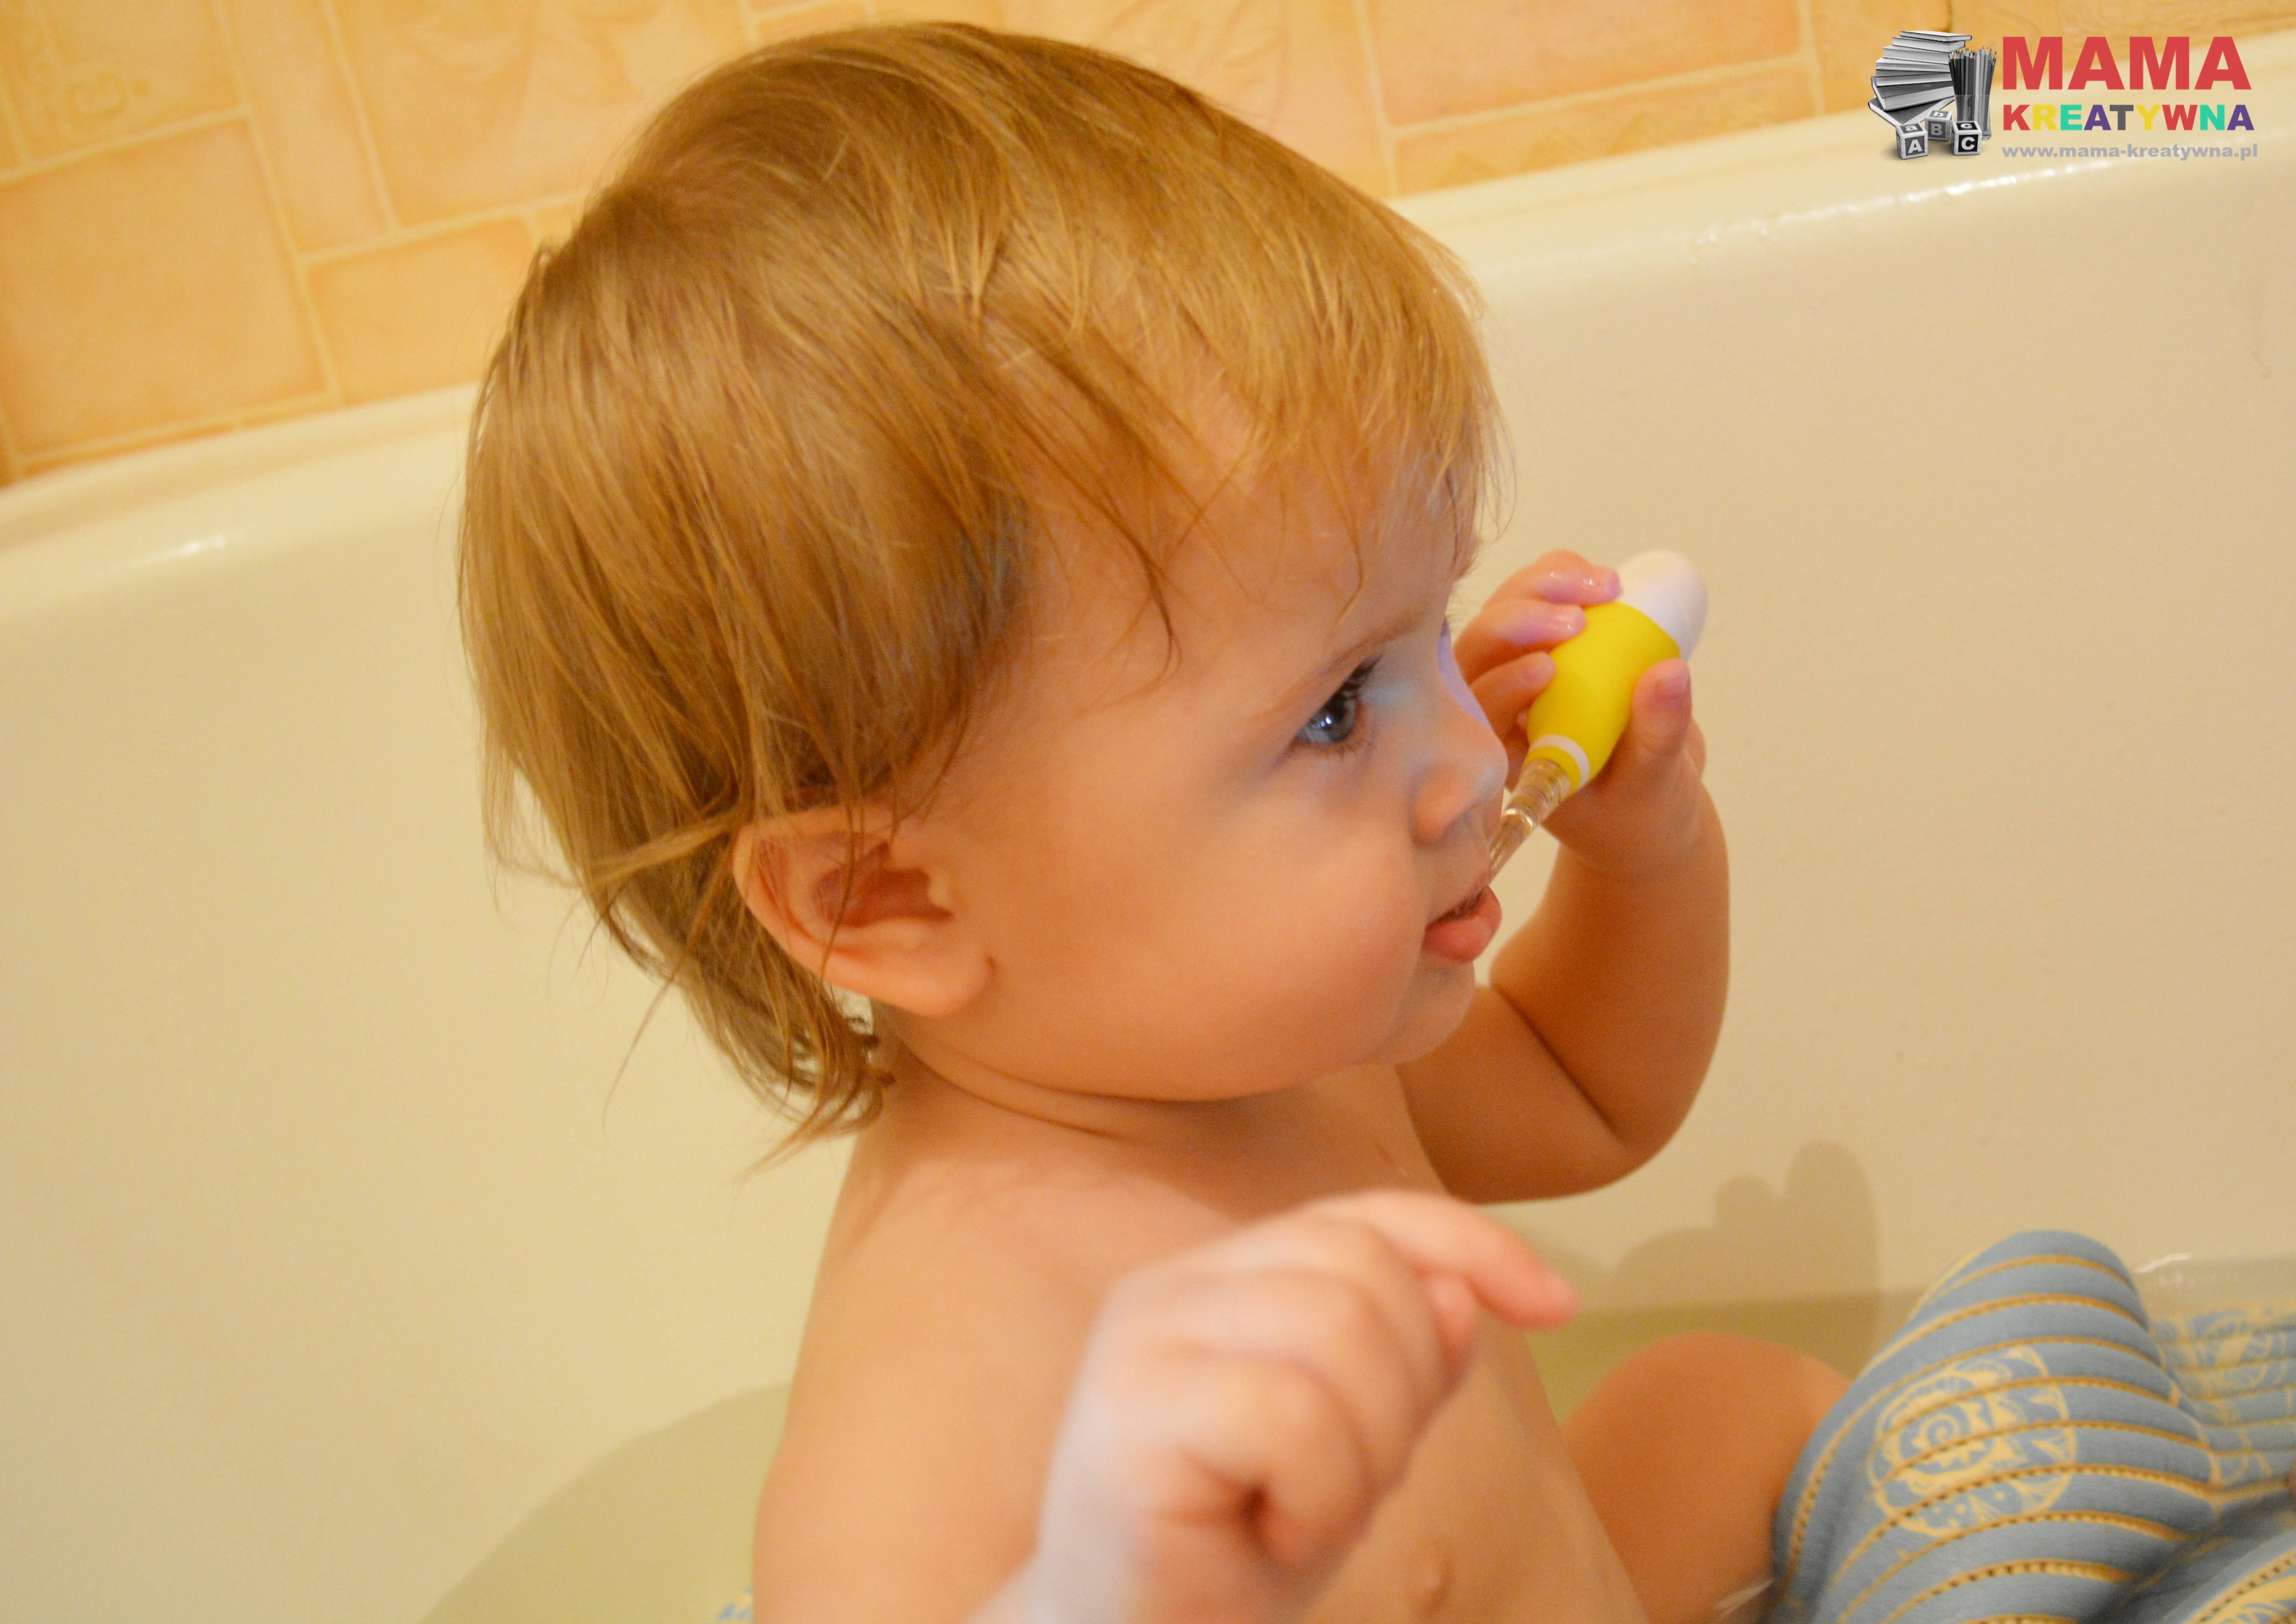 higiena jamy ustnej u niemowląt